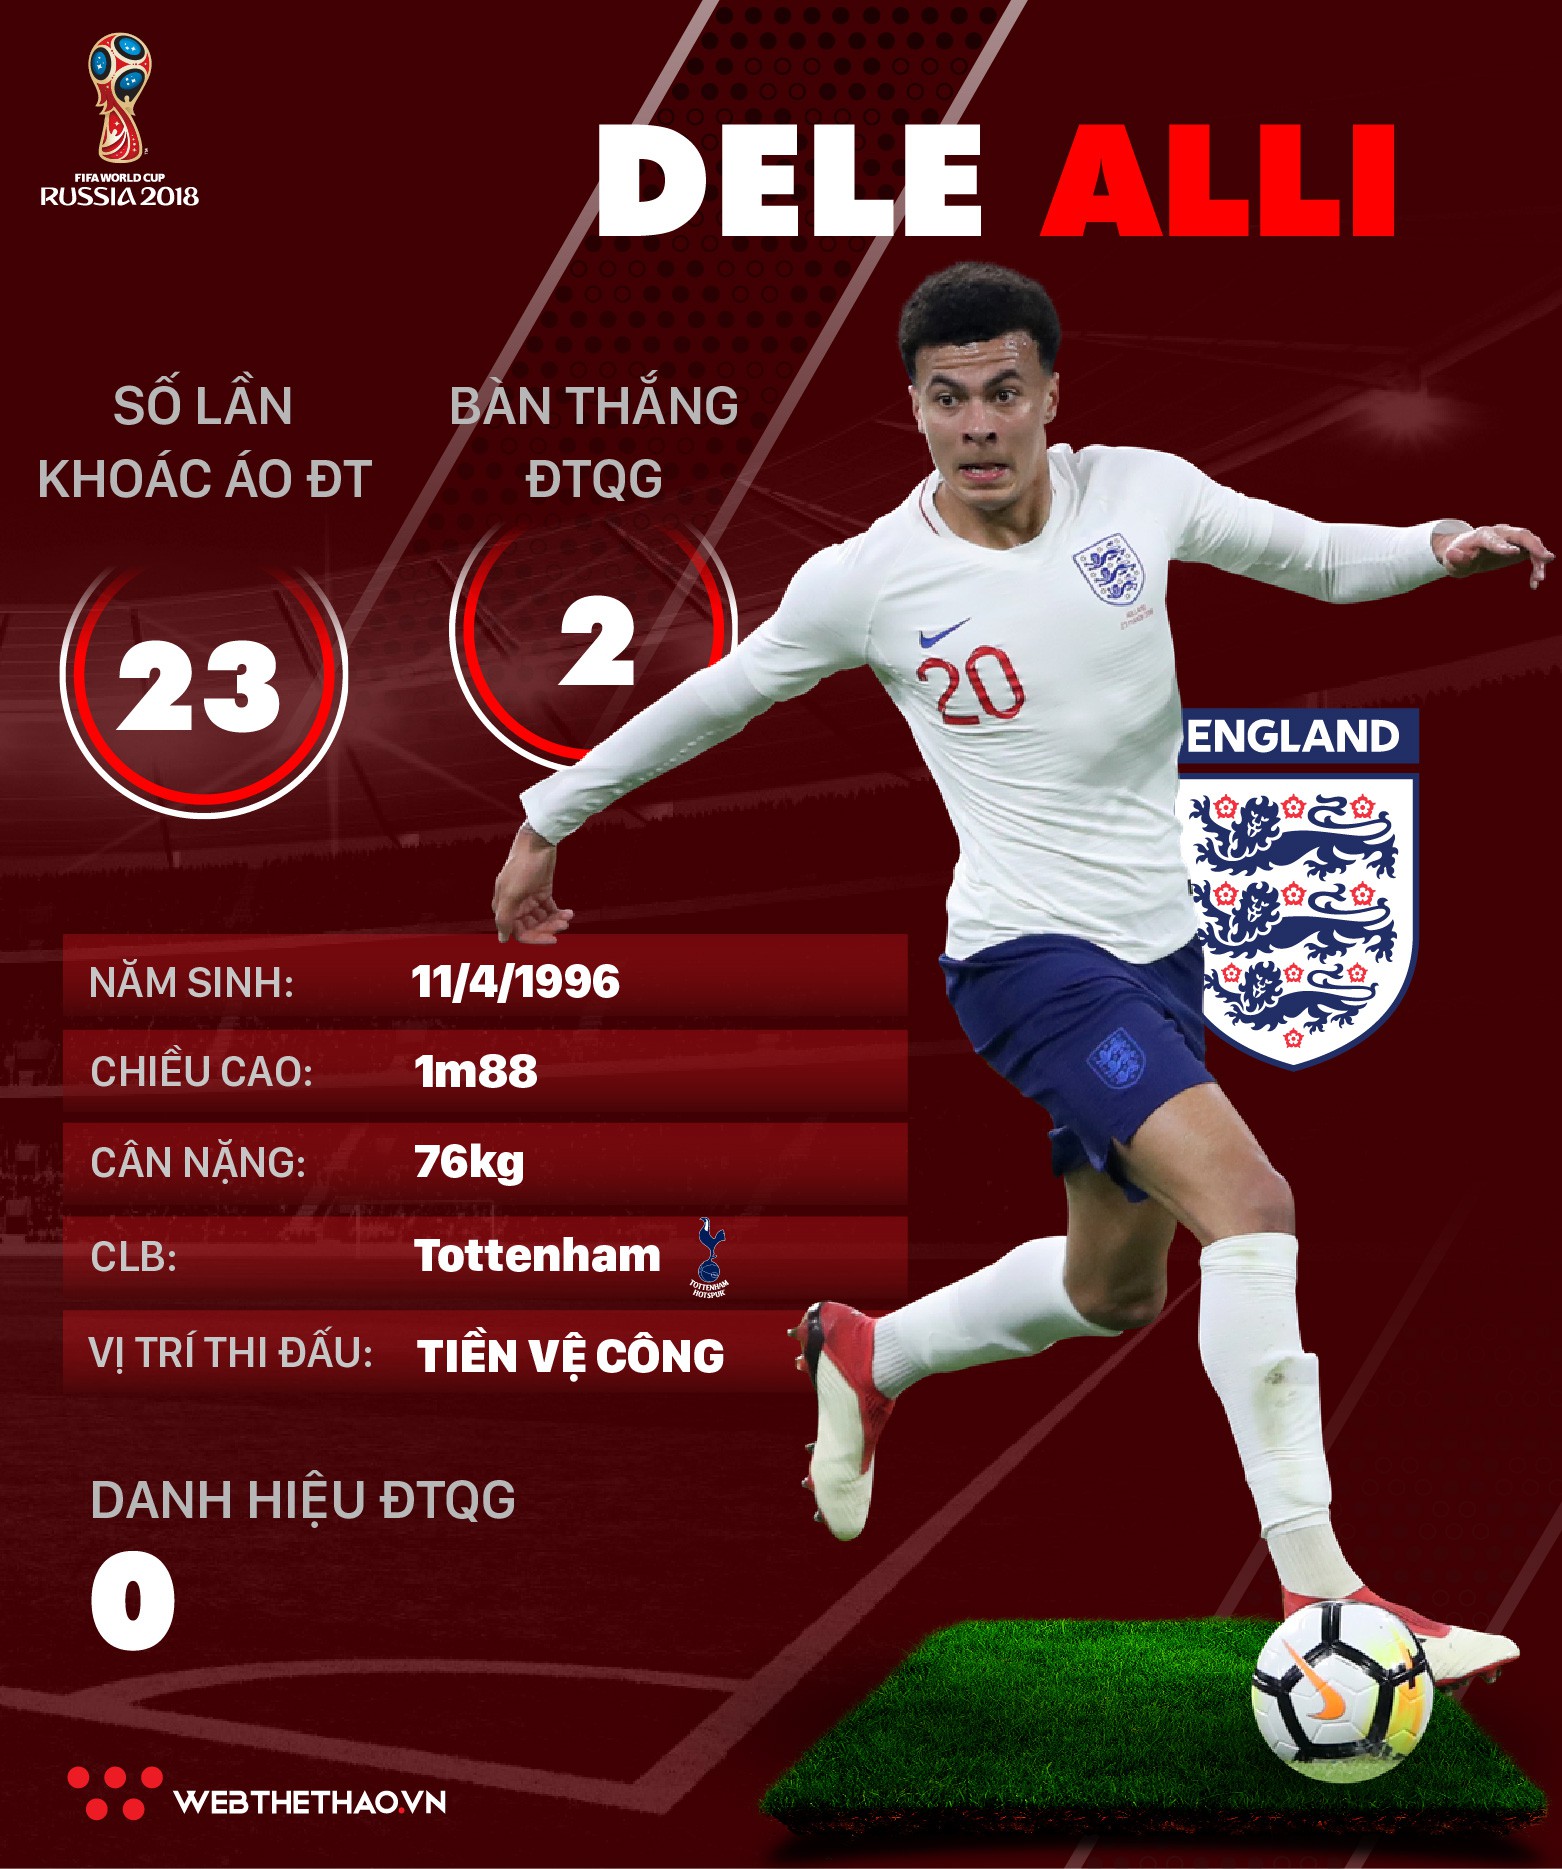 Thông tin cầu thủ Dele Alli của ĐT Anh dự World Cup 2018